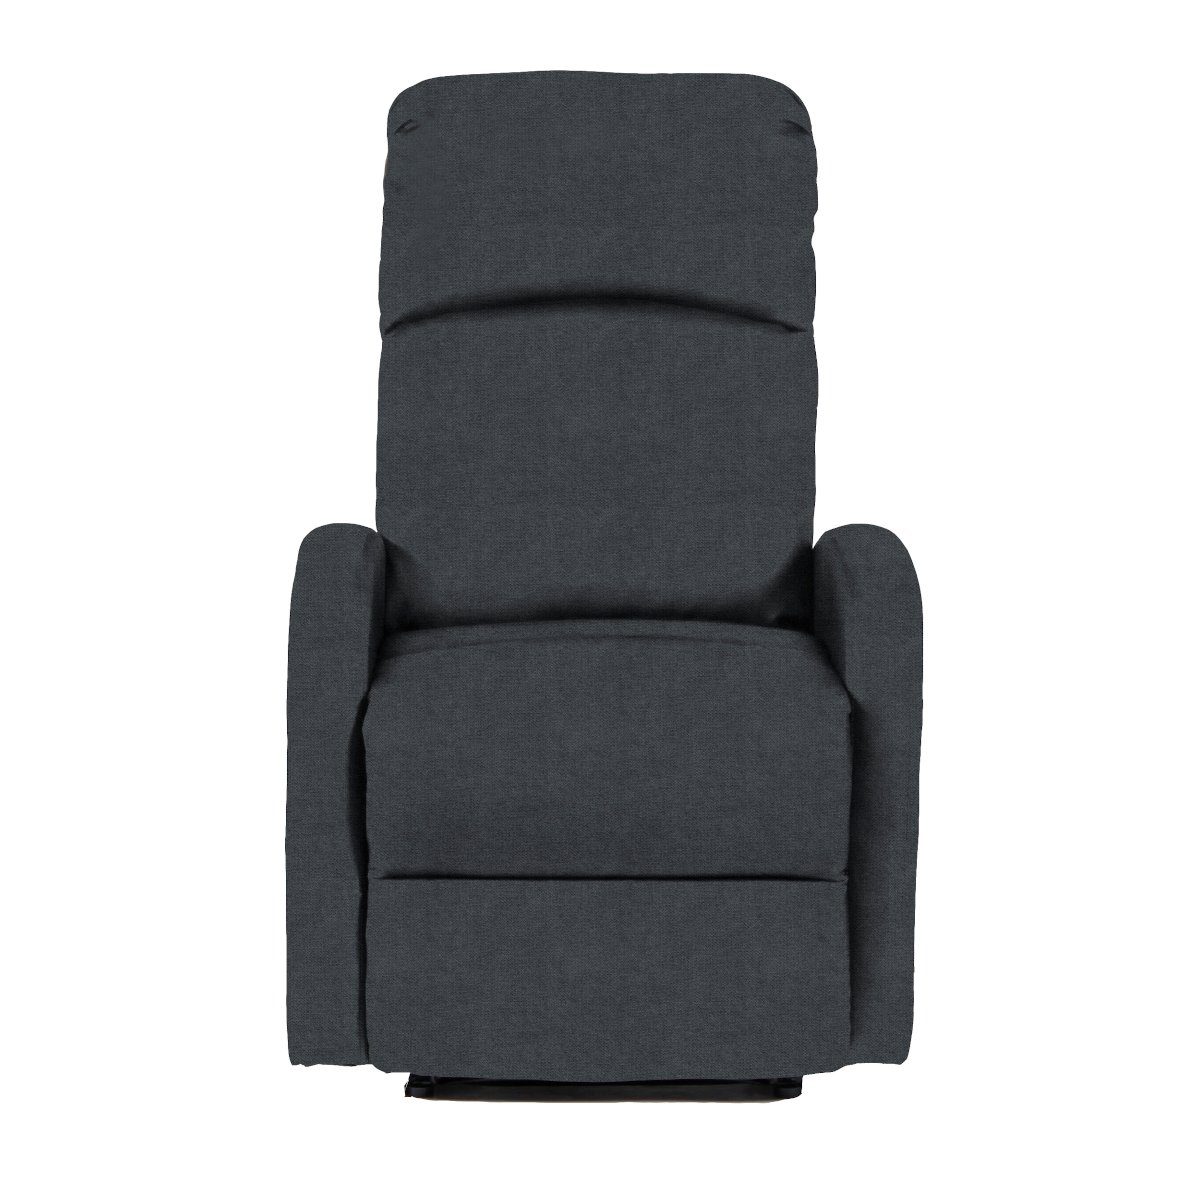 SVITA Relaxsessel LEX, weich Dunkelgrau hoher Sitzkomfort ergonomisch gepolstert, Dunkelgrau geformt, 